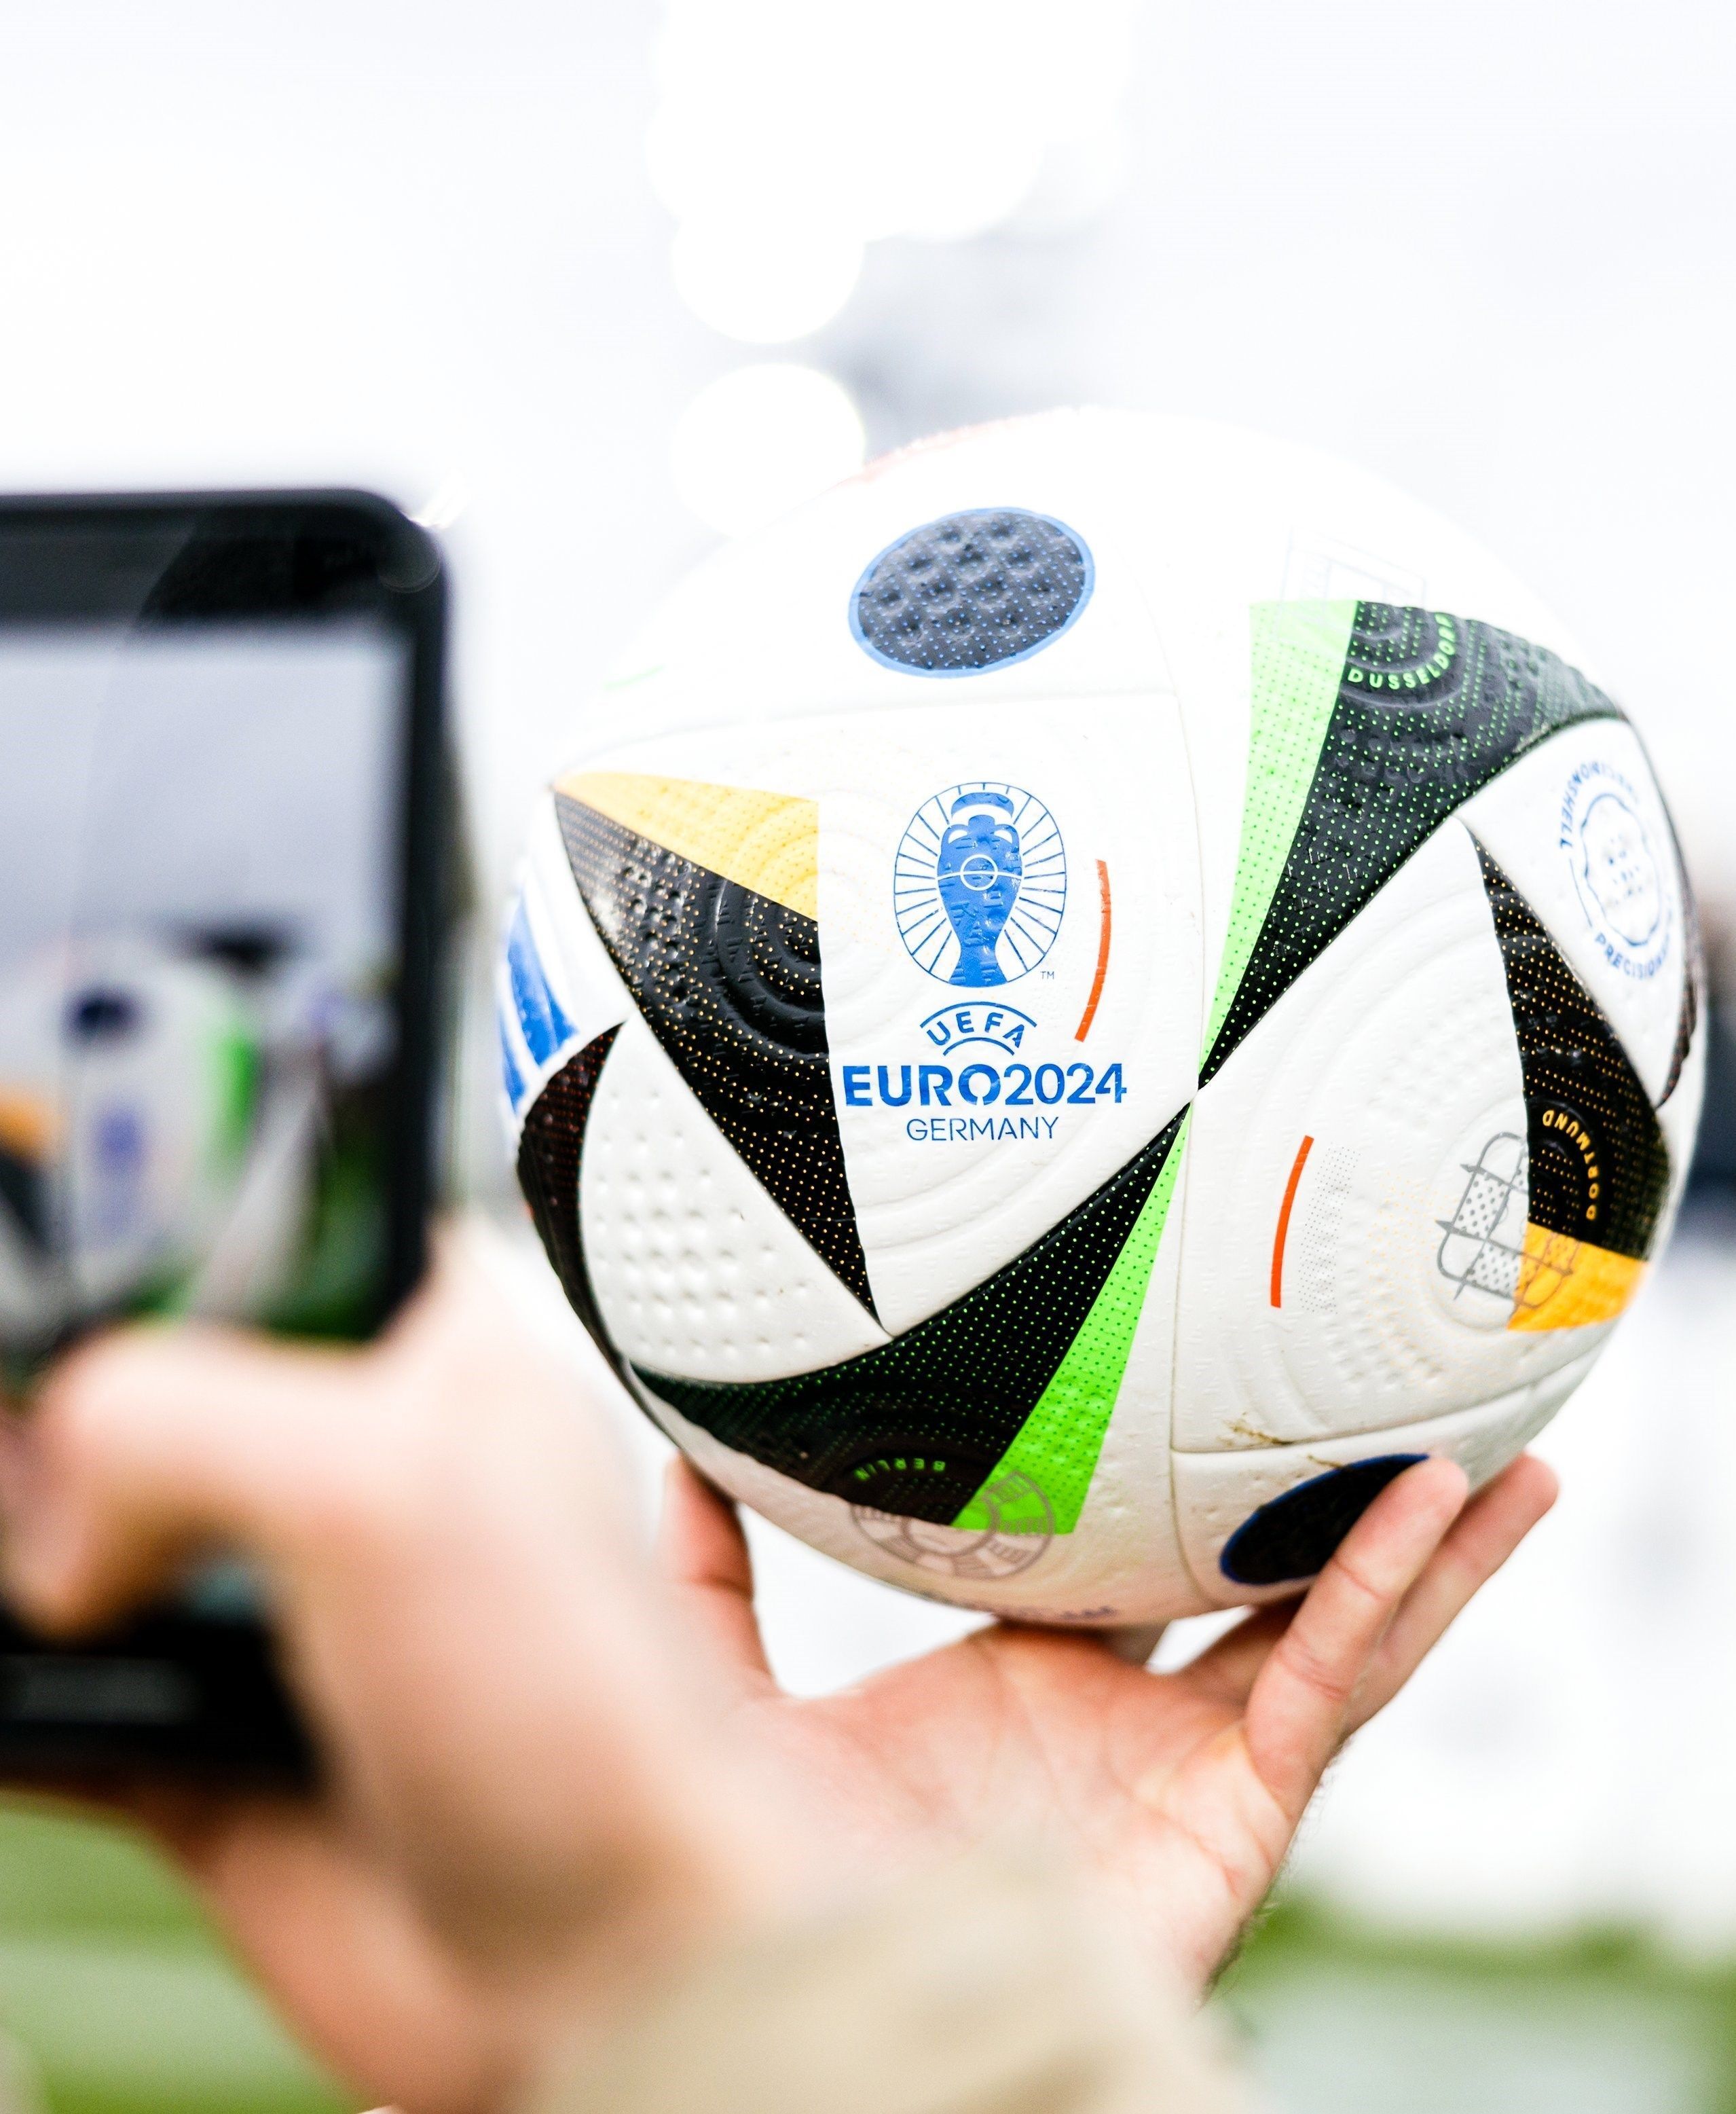 رونمایی از توپ یورو ۲۰۲۴ با تکنولوژی خاص